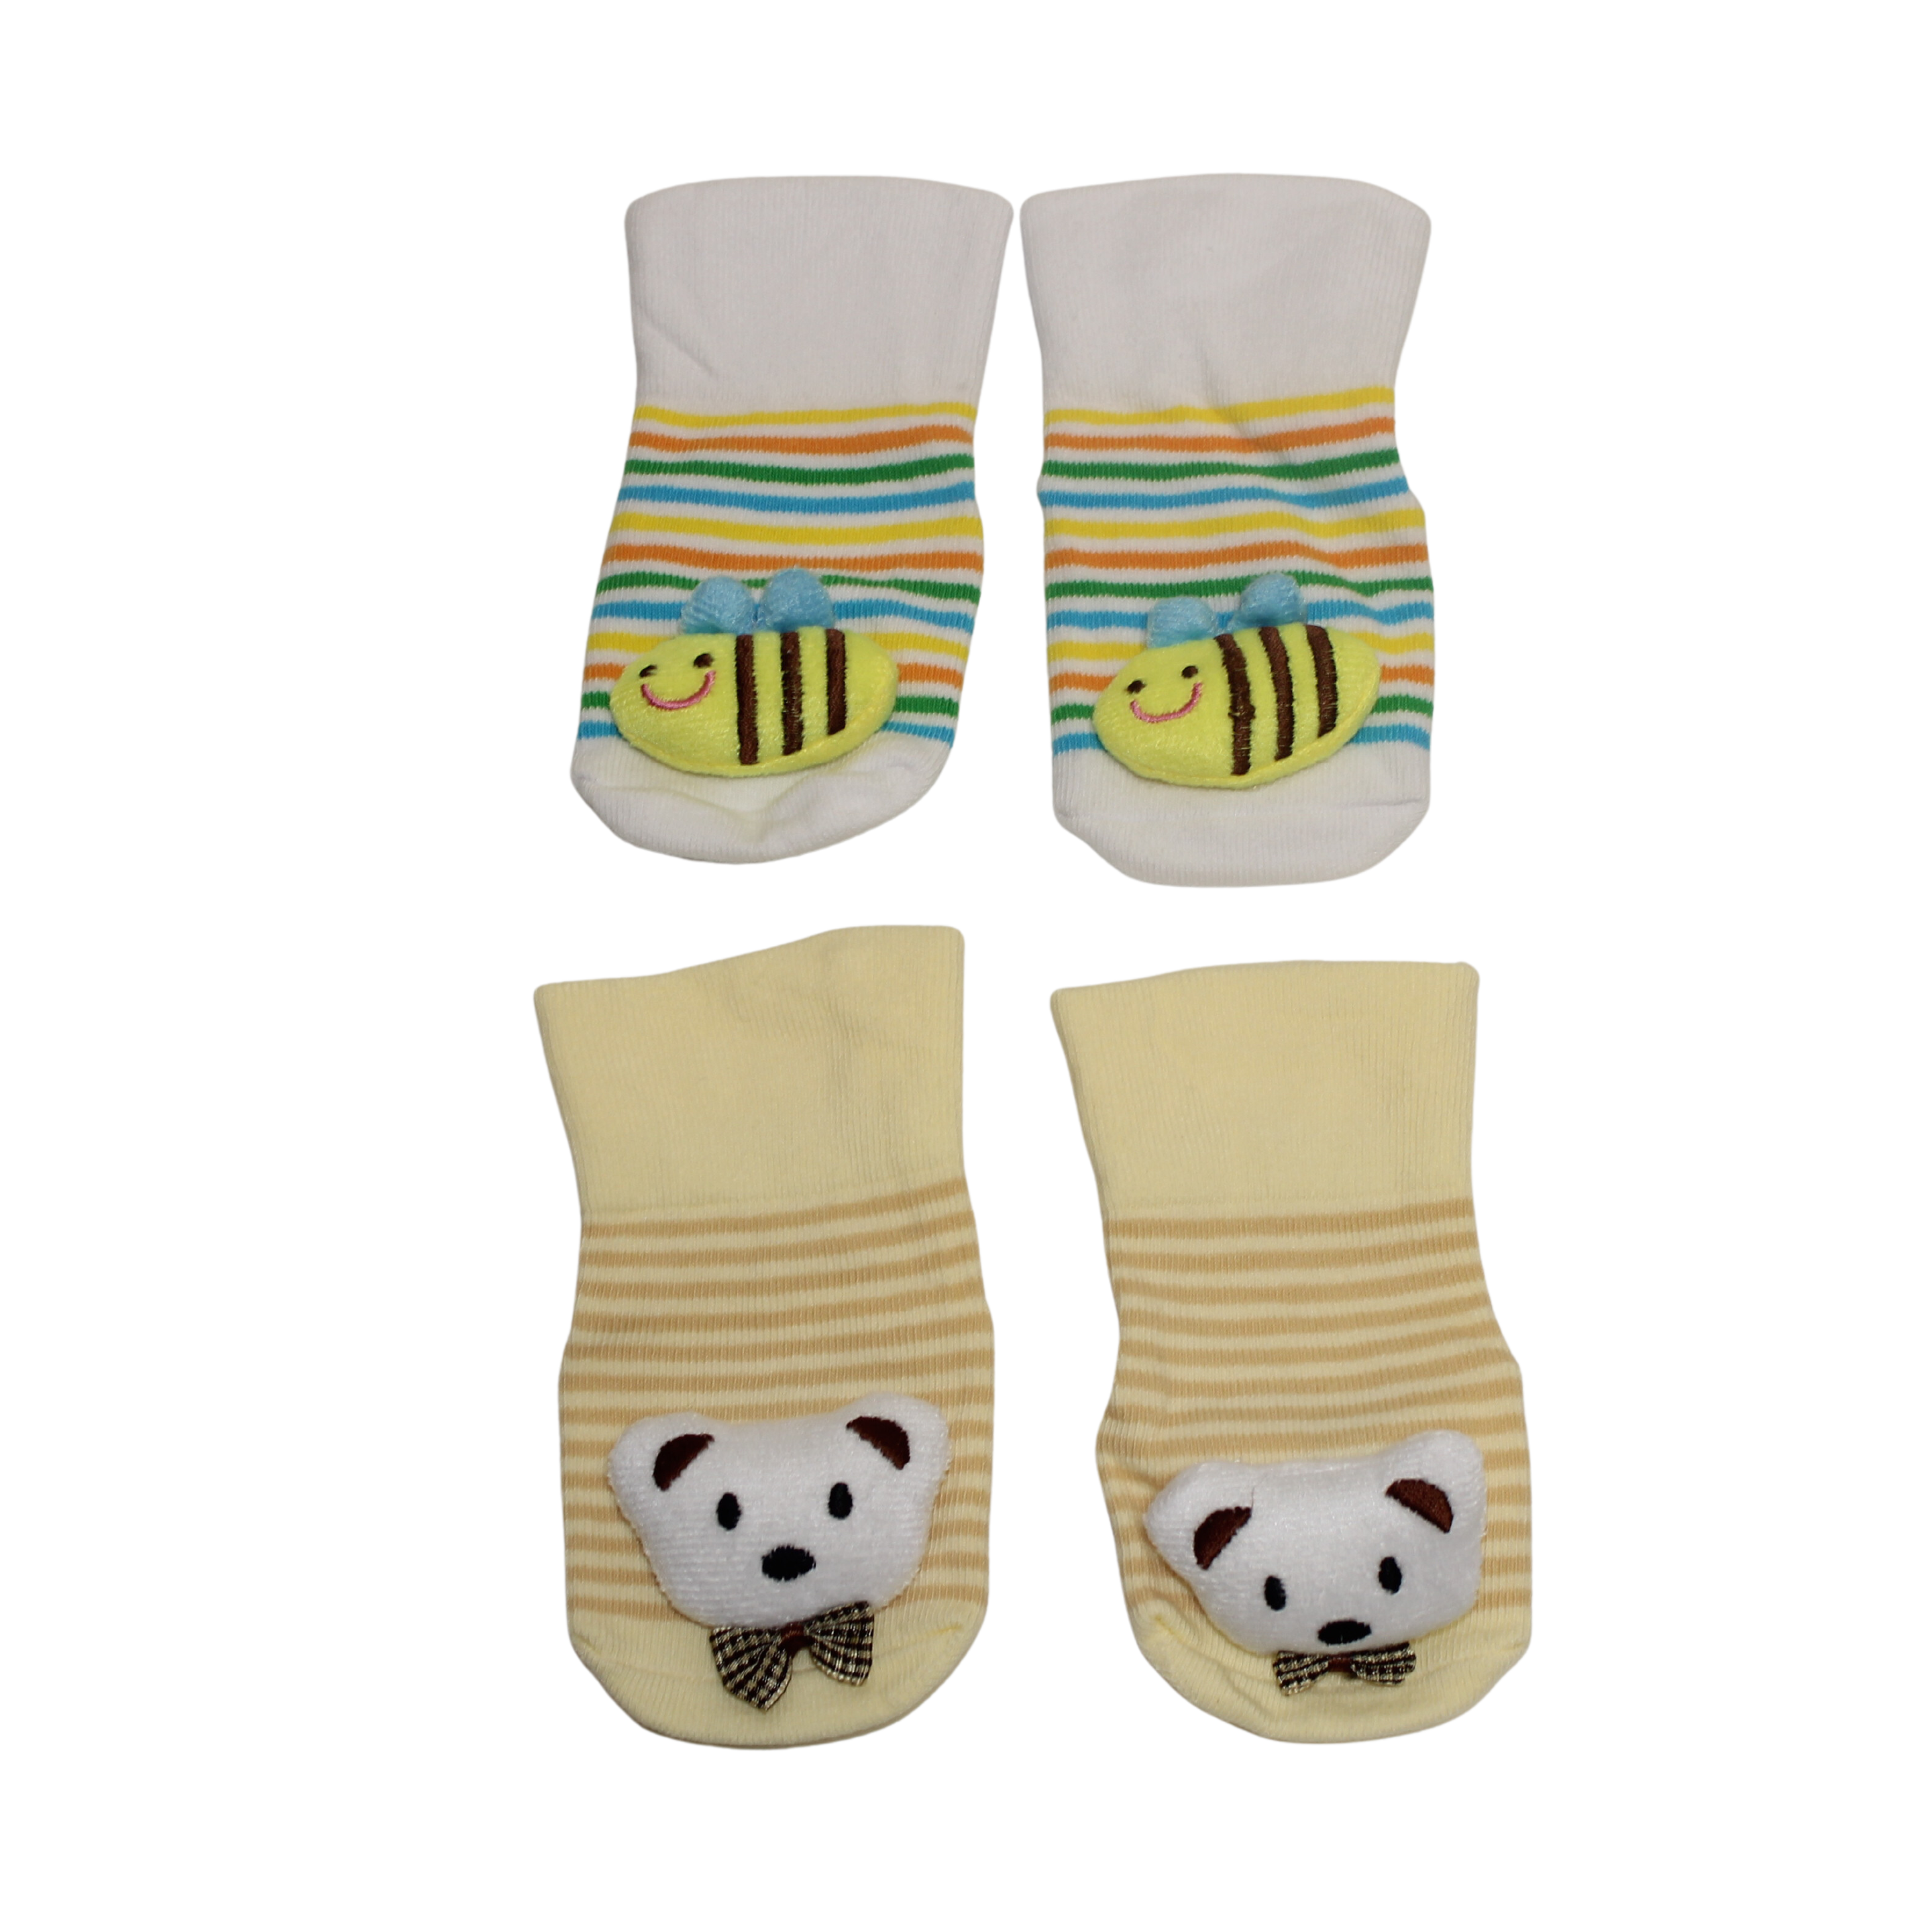 Bee and Teddy Socks